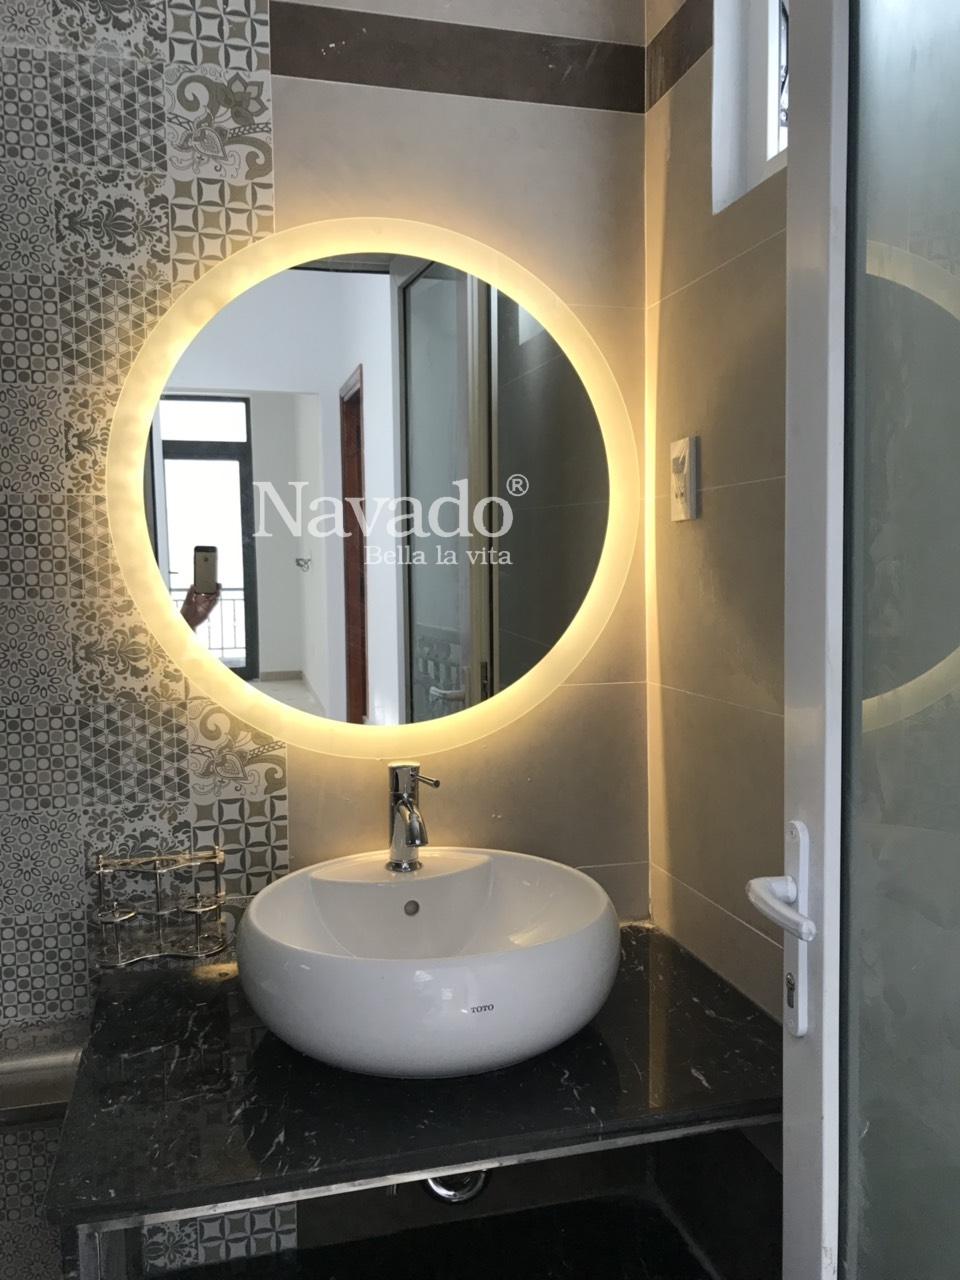 Tròn viền LED, viền sáng treo tường nhà tắm Navado là sản phẩm cực kỳ ấn tượng để tạo nên một không gian sống hoàn hảo. Với màu sắc đa dạng và sáng tạo, sản phẩm sẽ đem lại cho bạn cảm giác vô cùng tươi mới và hiện đại. Hãy đến với Navado để tạo nên một không gian sống tiện nghi và hiện đại nhất.